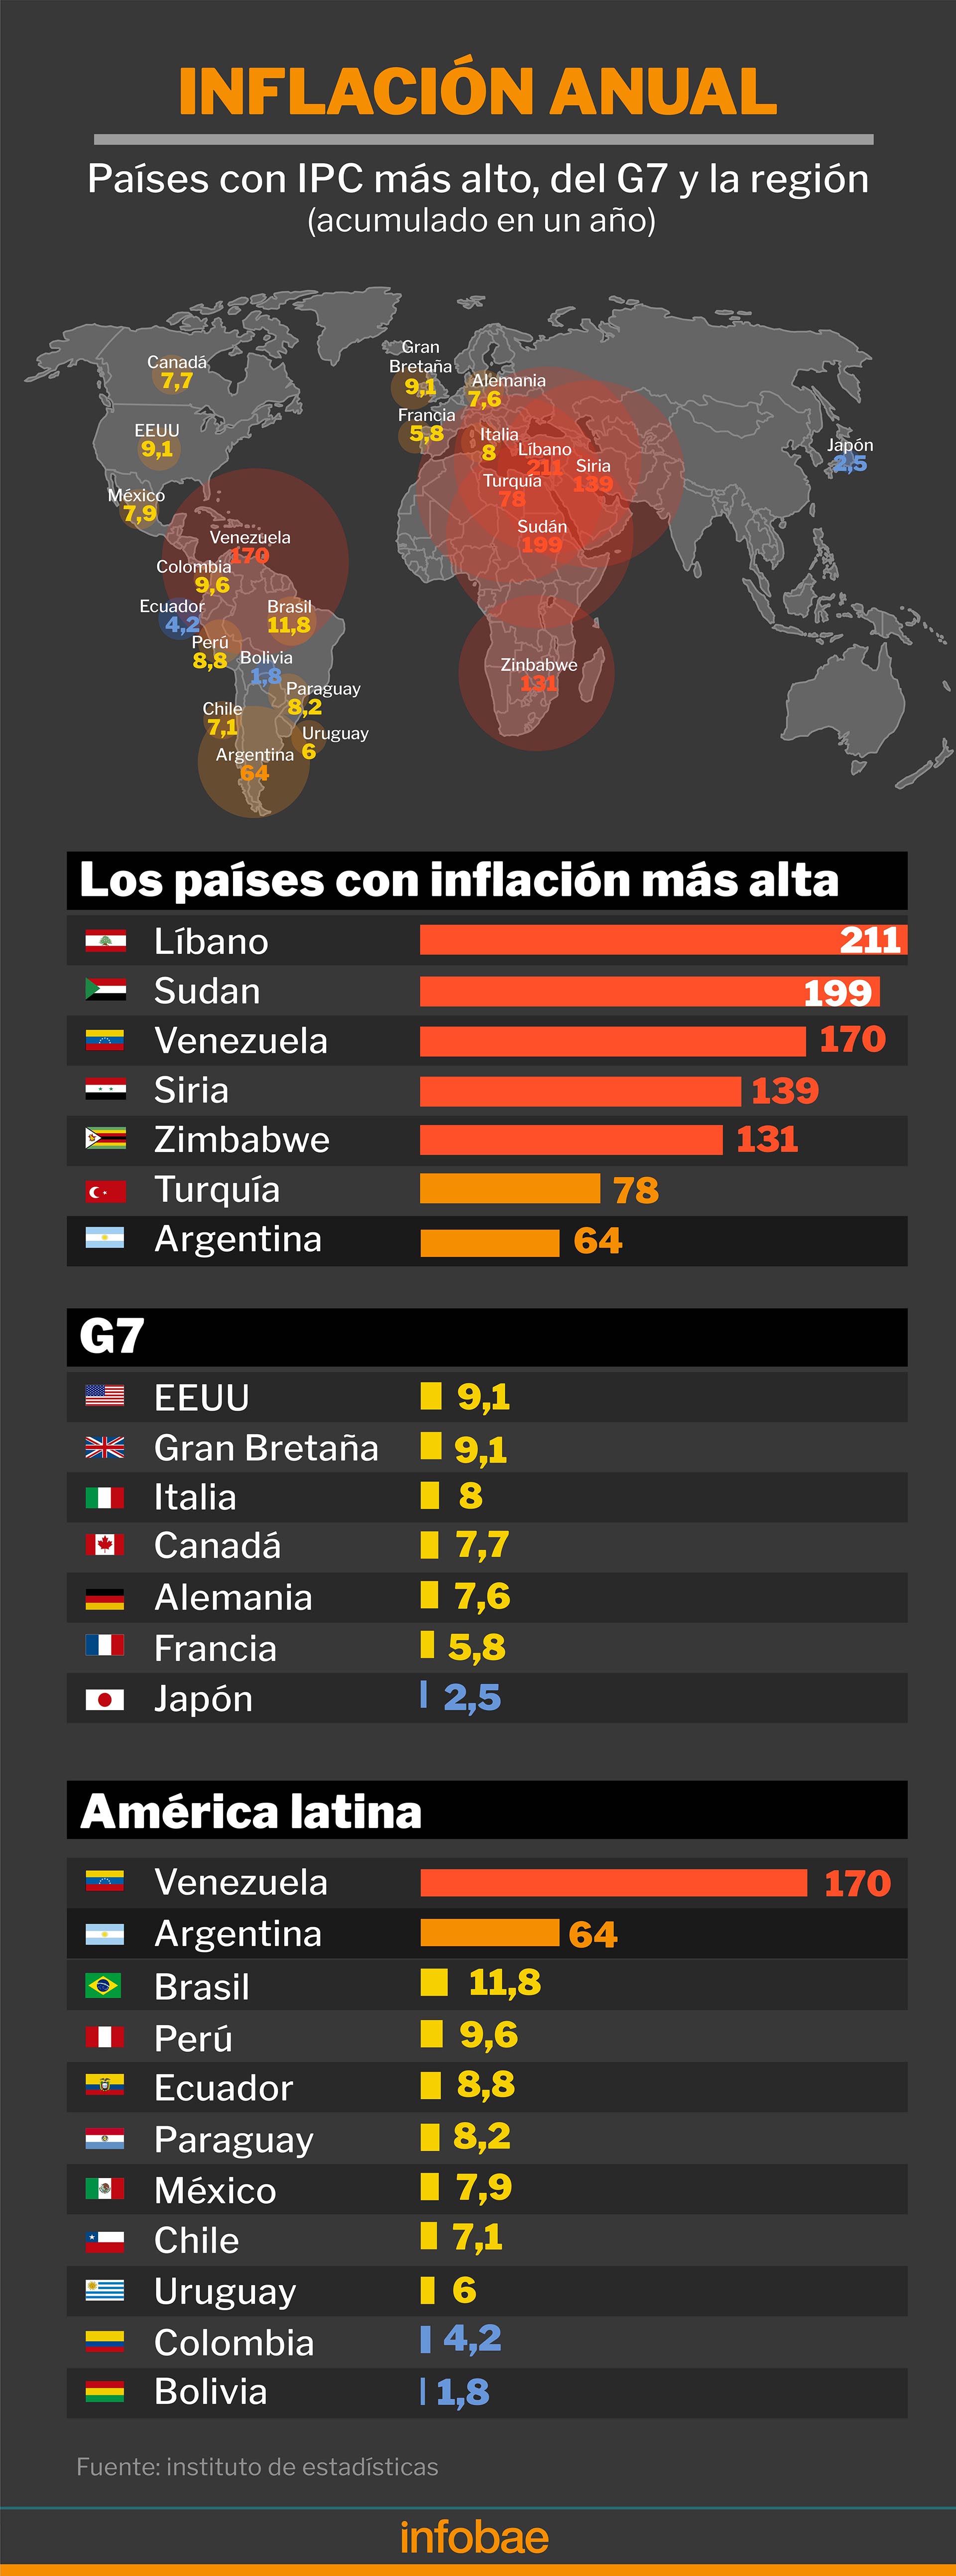 Los países con más inflación del mundo en el primer semestre del año
Infografía: Marcelo Regalado